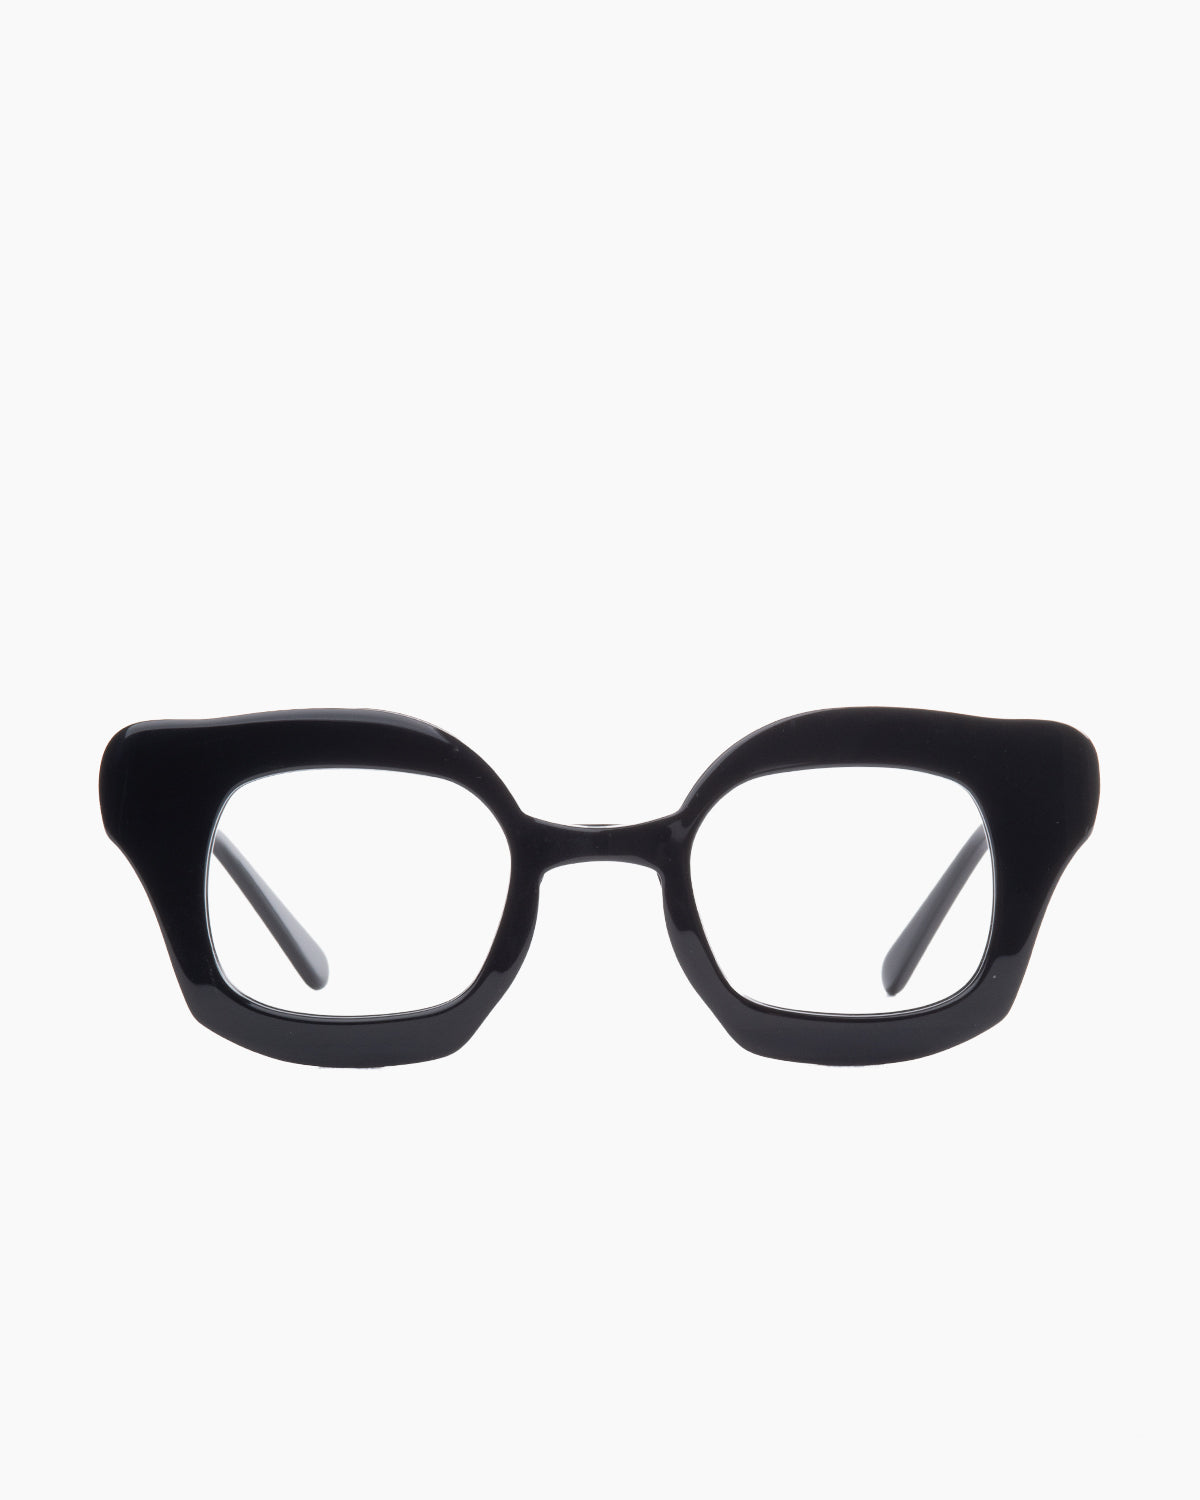 Gamine - Navesödermalm - black/black | Bar à lunettes:  Marie-Sophie Dion